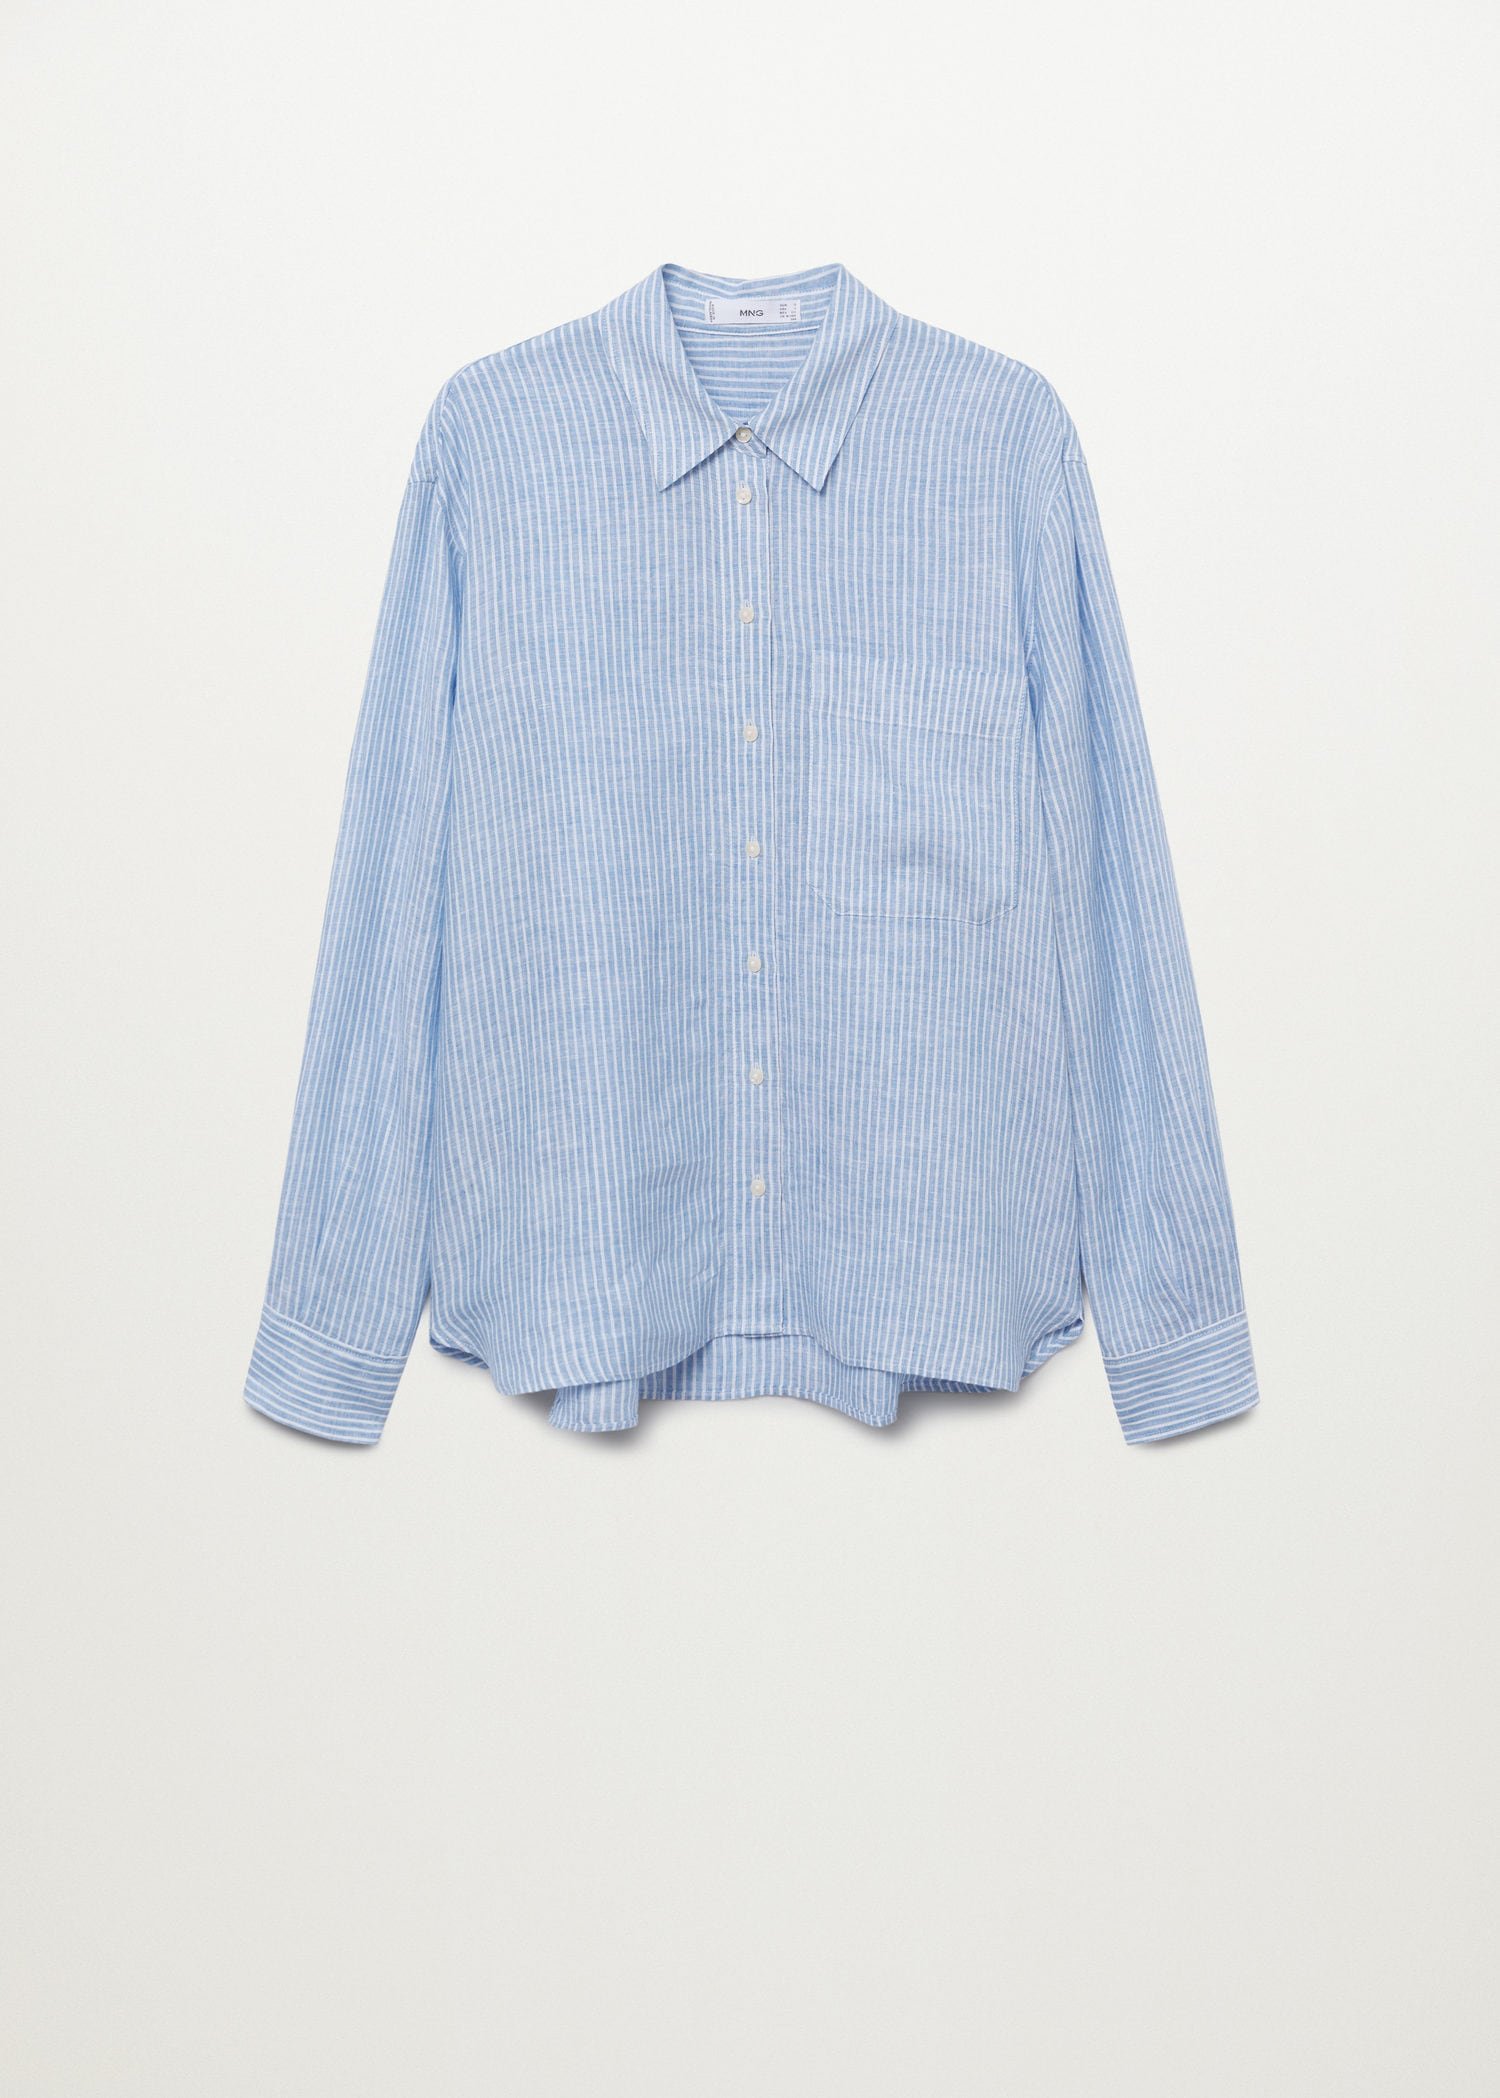 Reiss Campbell Linen Shirt, Blue